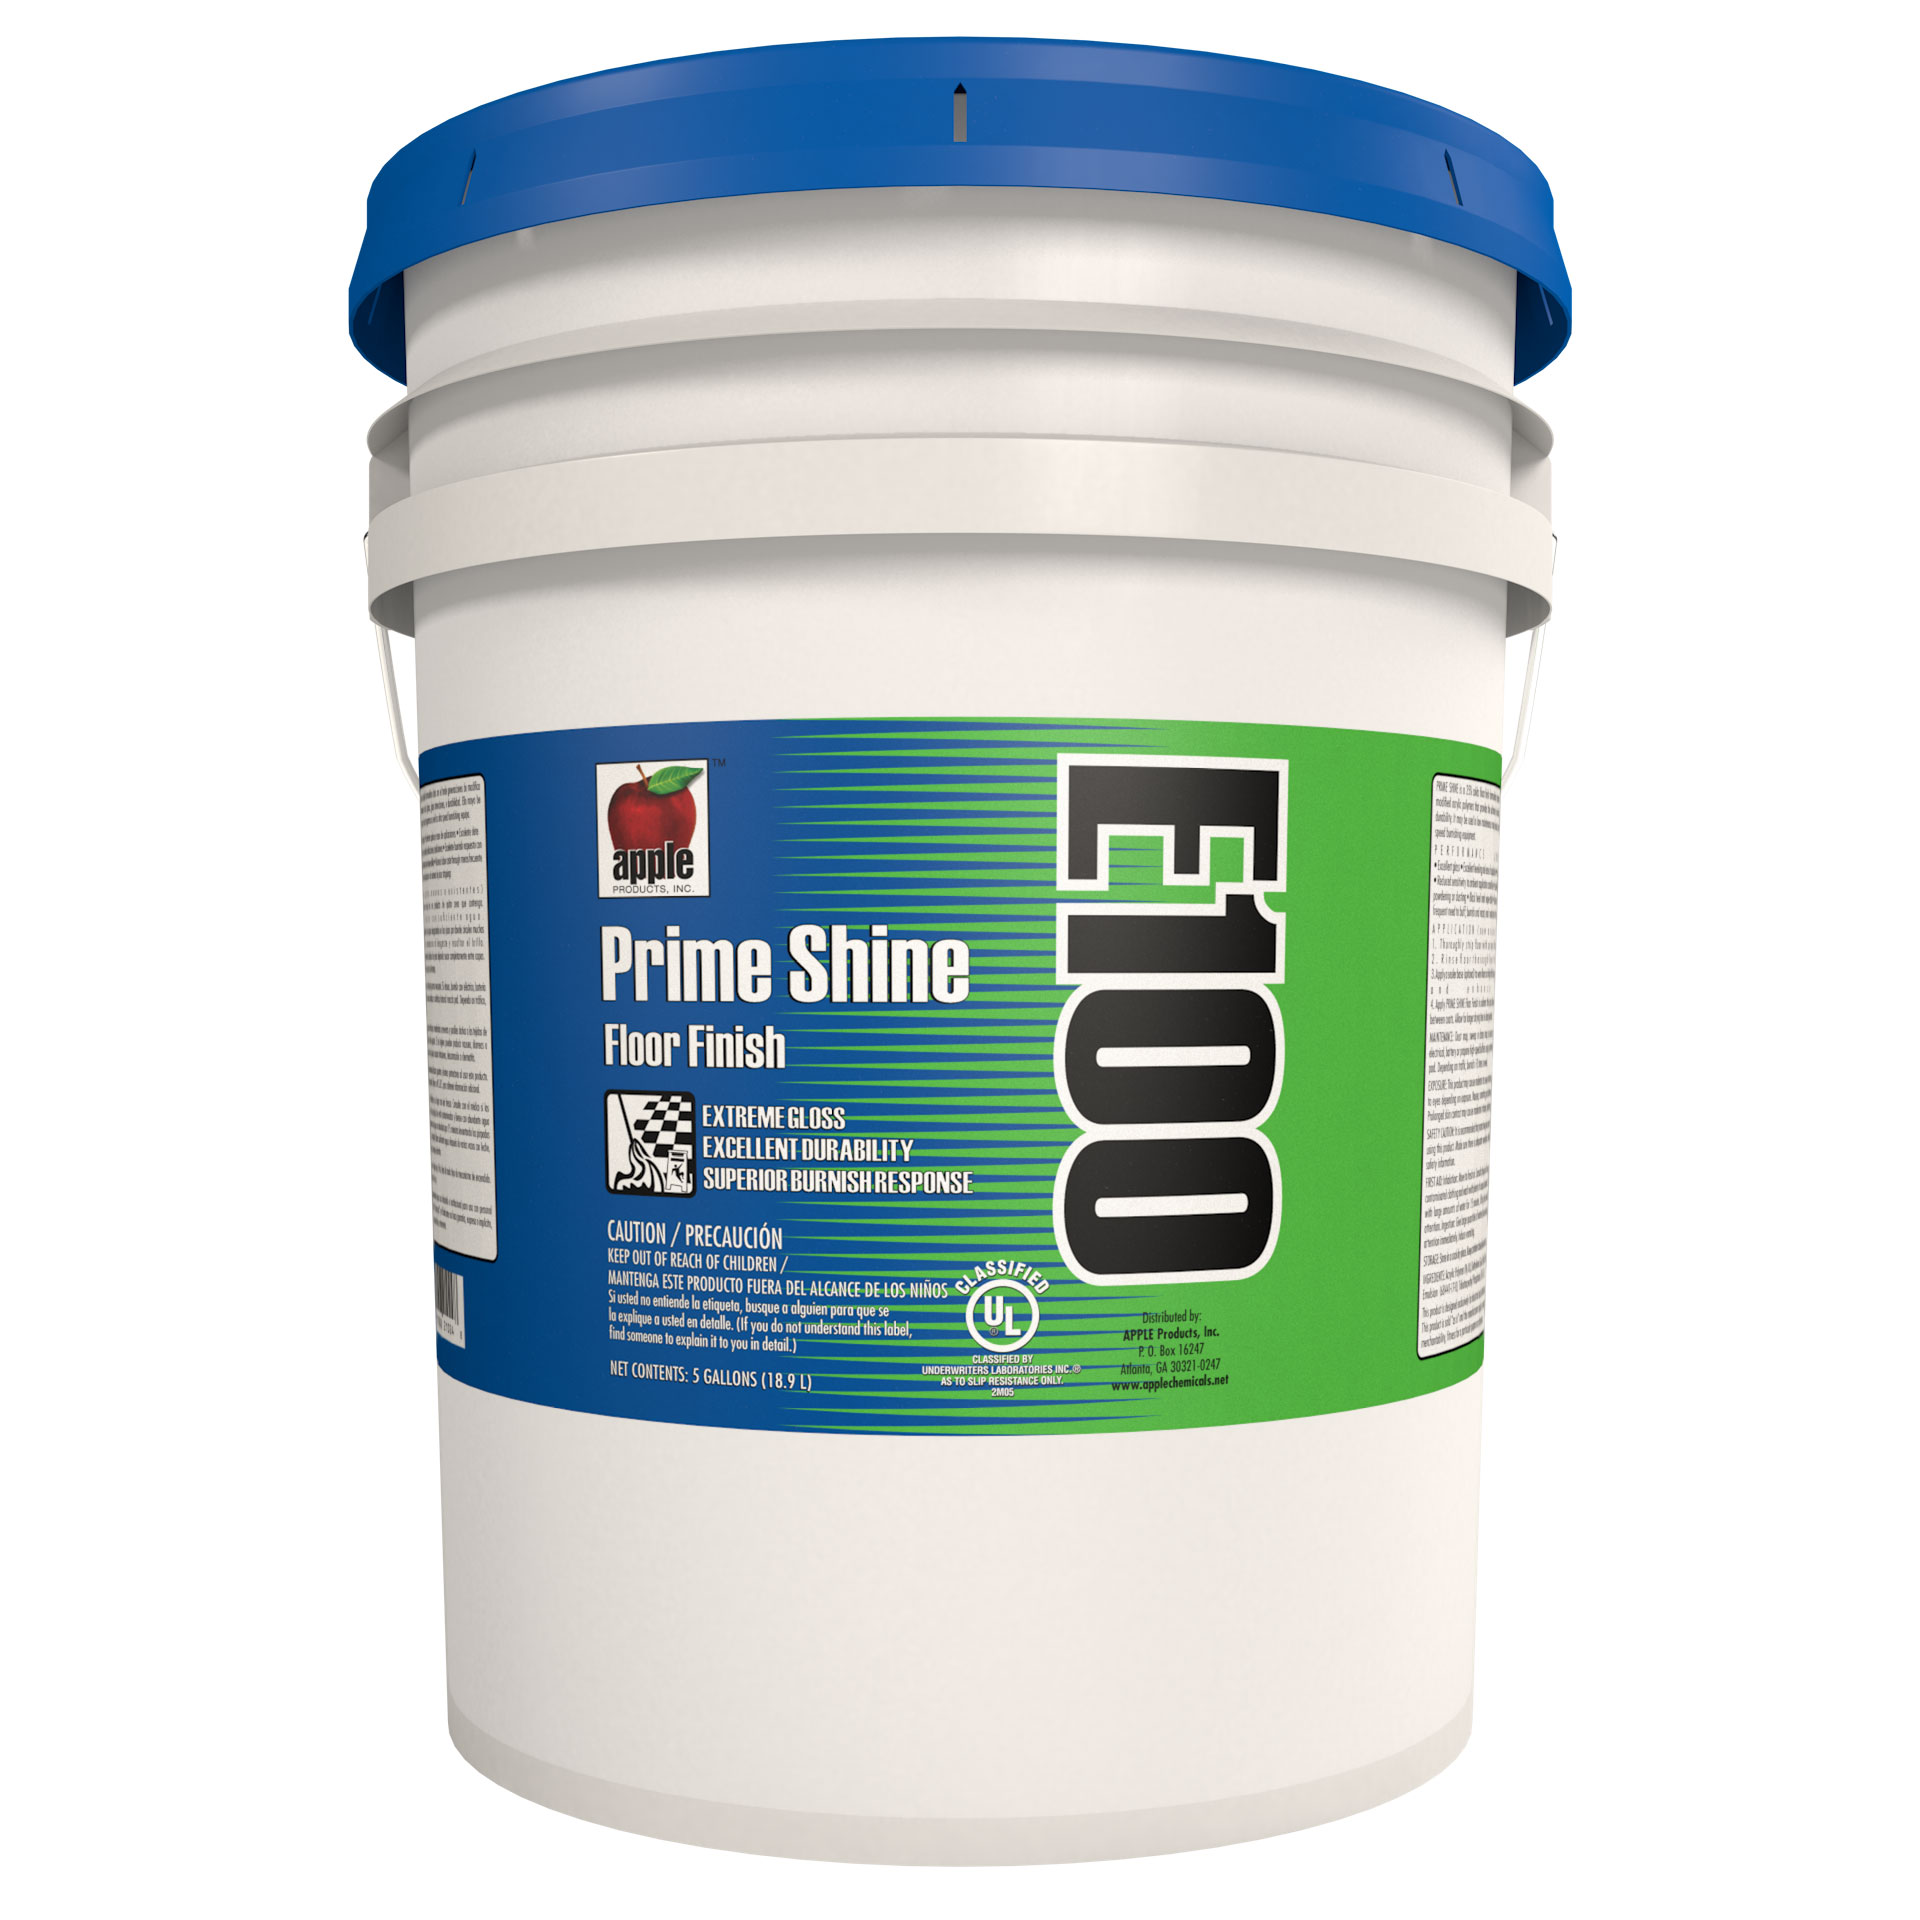 E100-5 PRIME SHINE 5 GAL PAIL